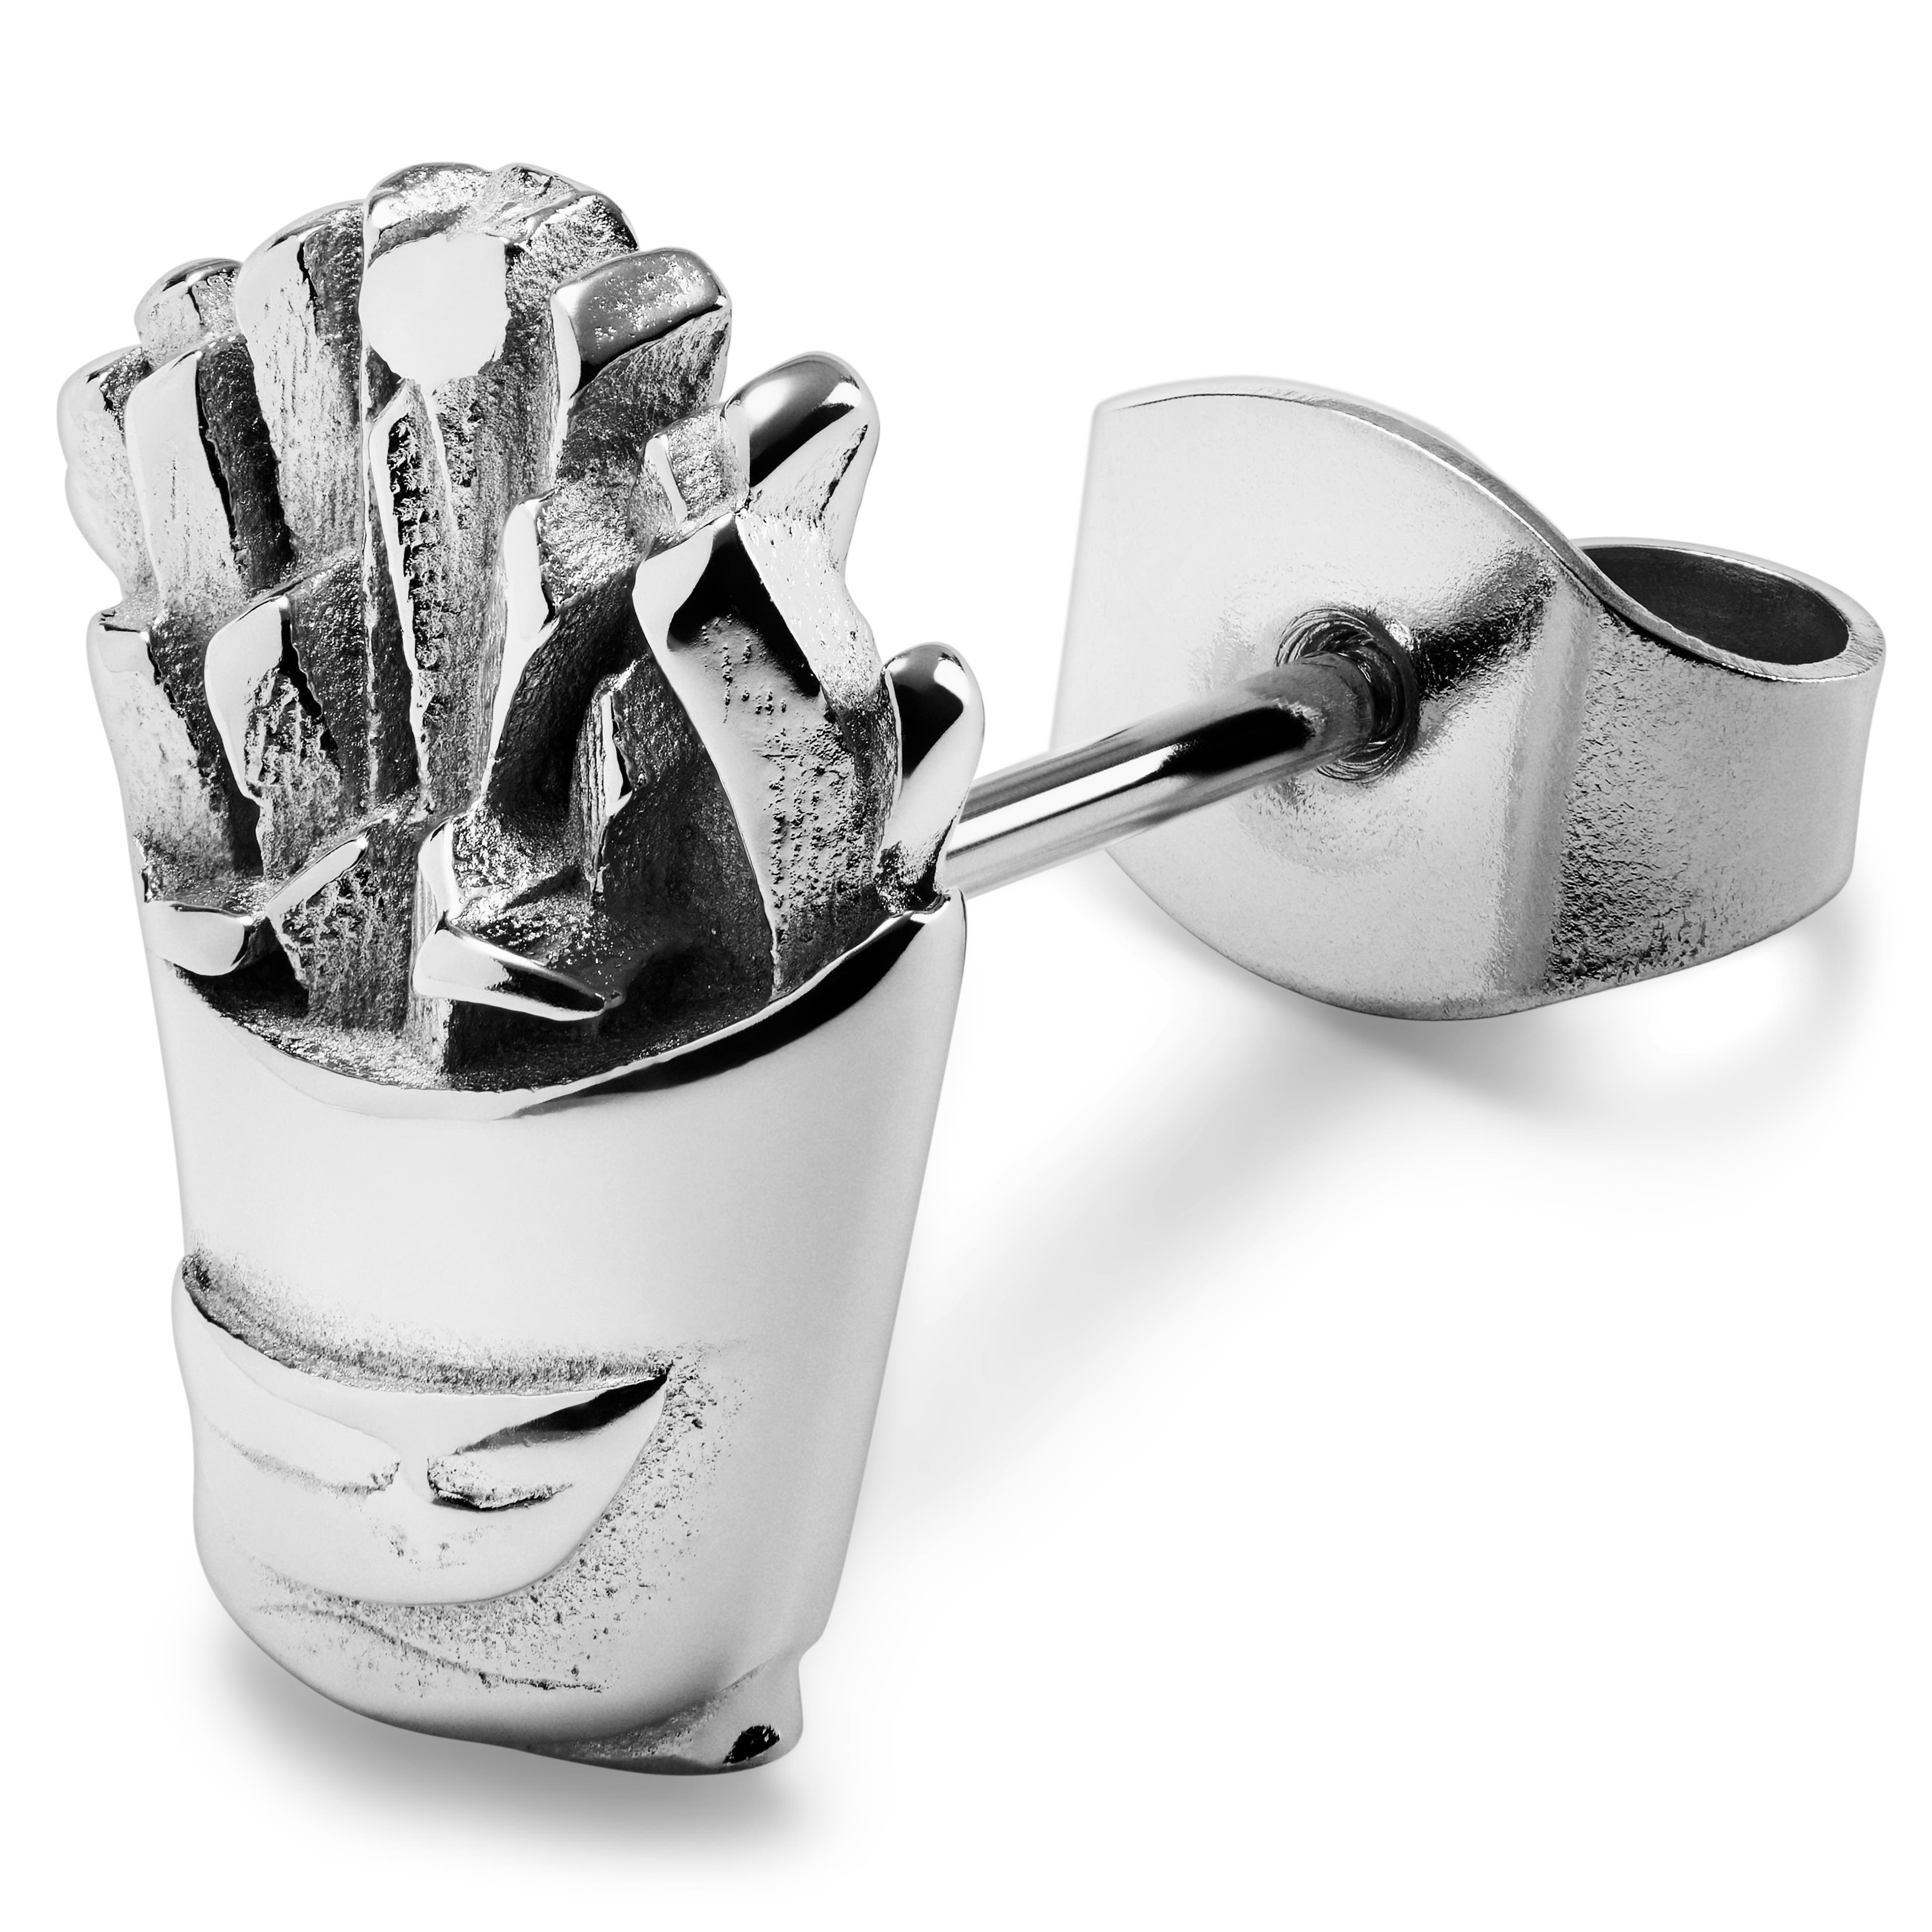 Jaygee | Náušnice pecka ve tvaru hranolek z nerezové oceli stříbrné barvy